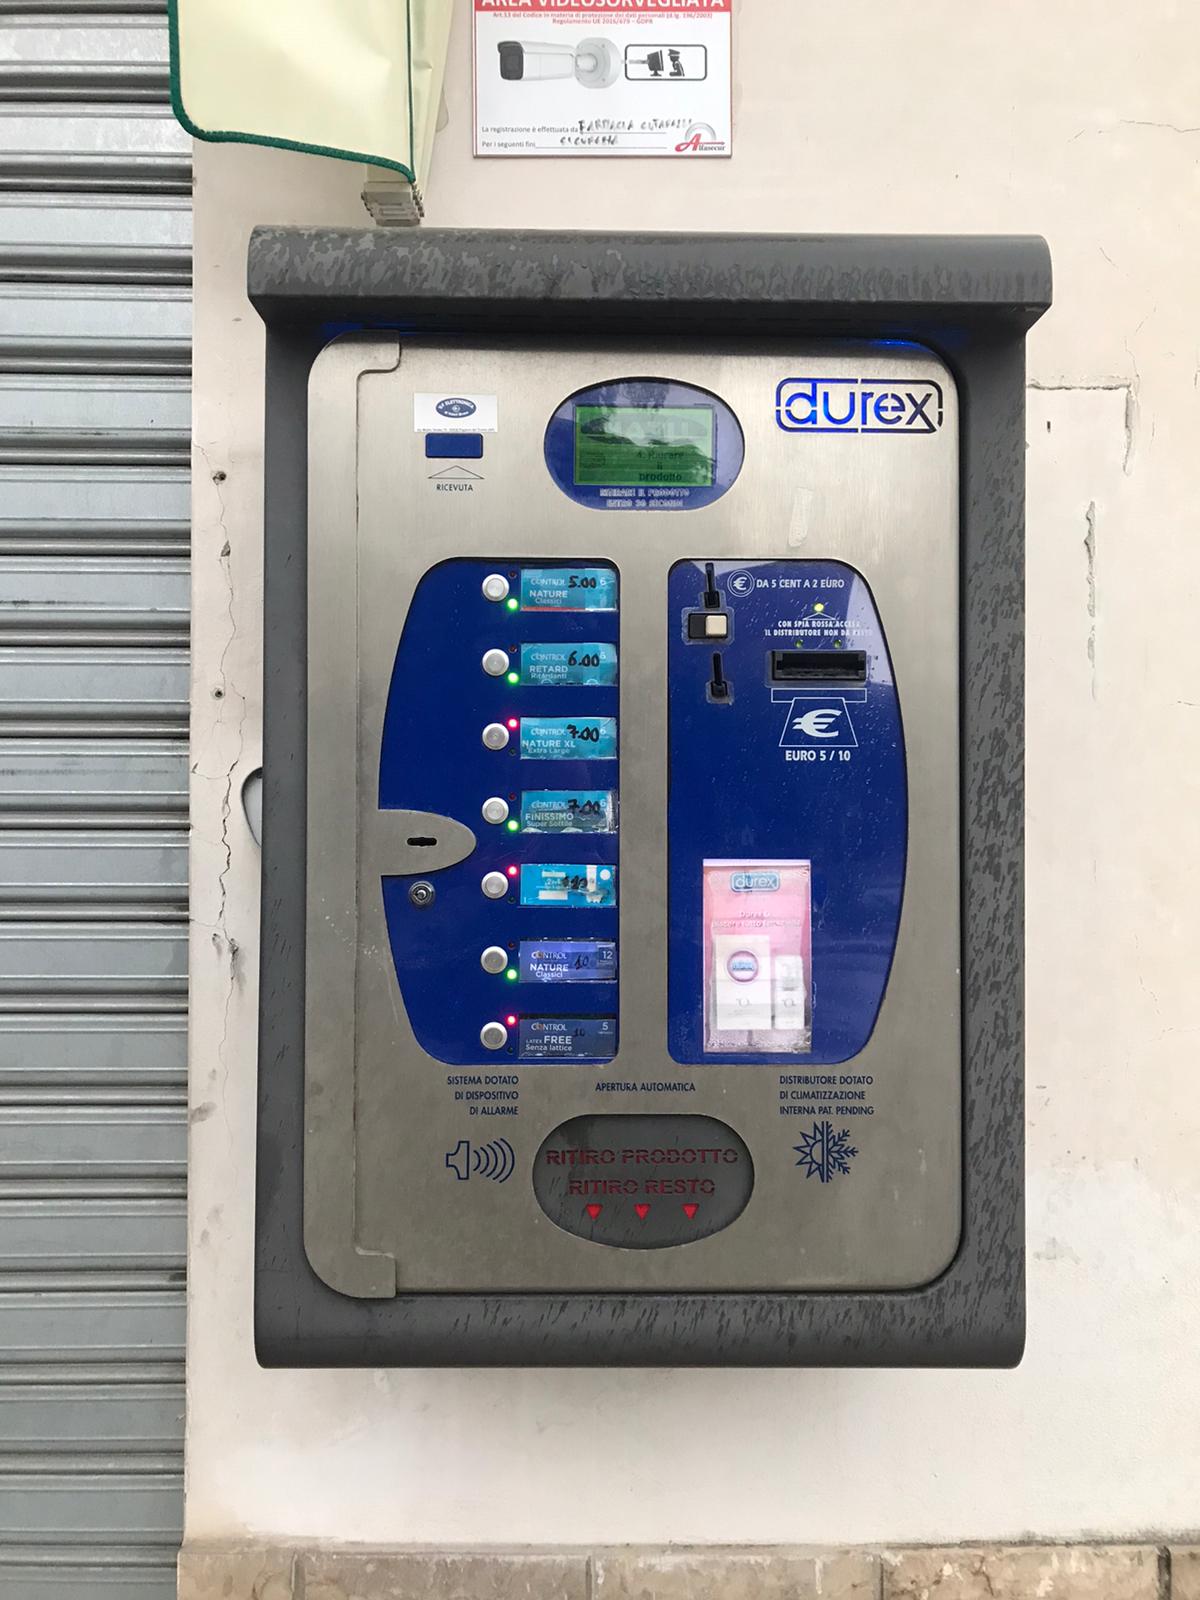 Kondomautomat vor einer Apotheke